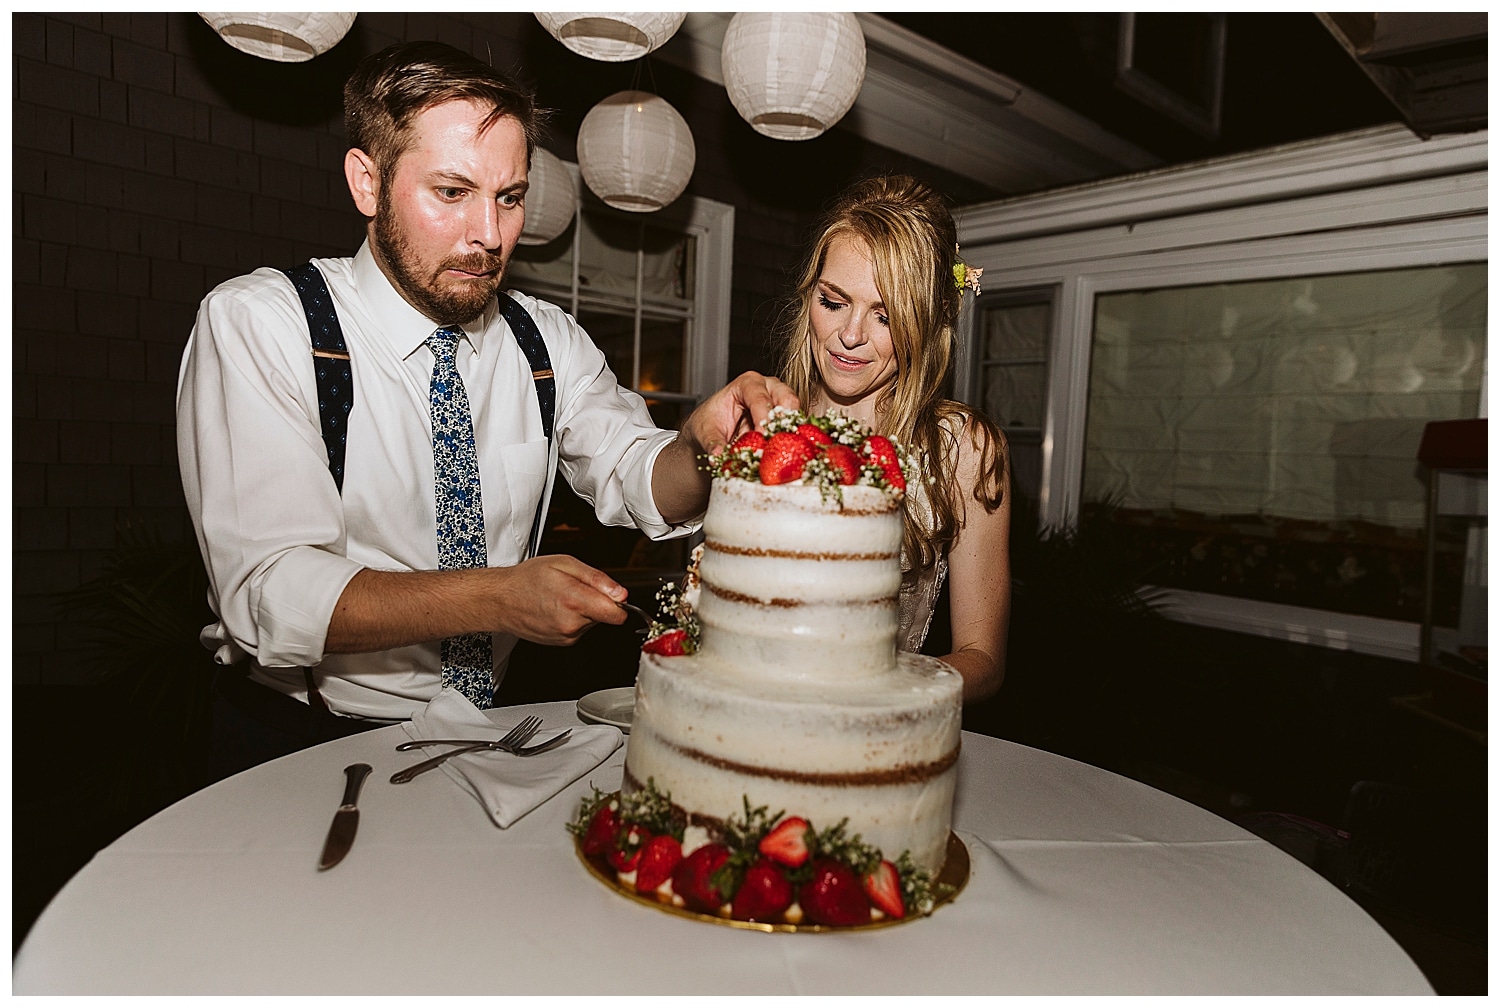 cake cutting at Eaton, NH wedding